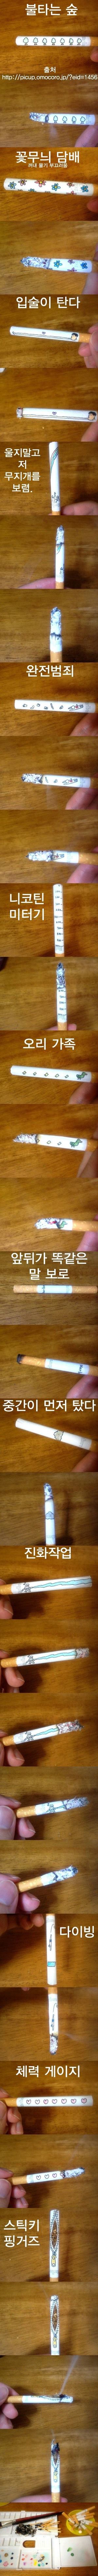 In - 아이디어 - 영 피우기 껄끄러운 담배.jpg